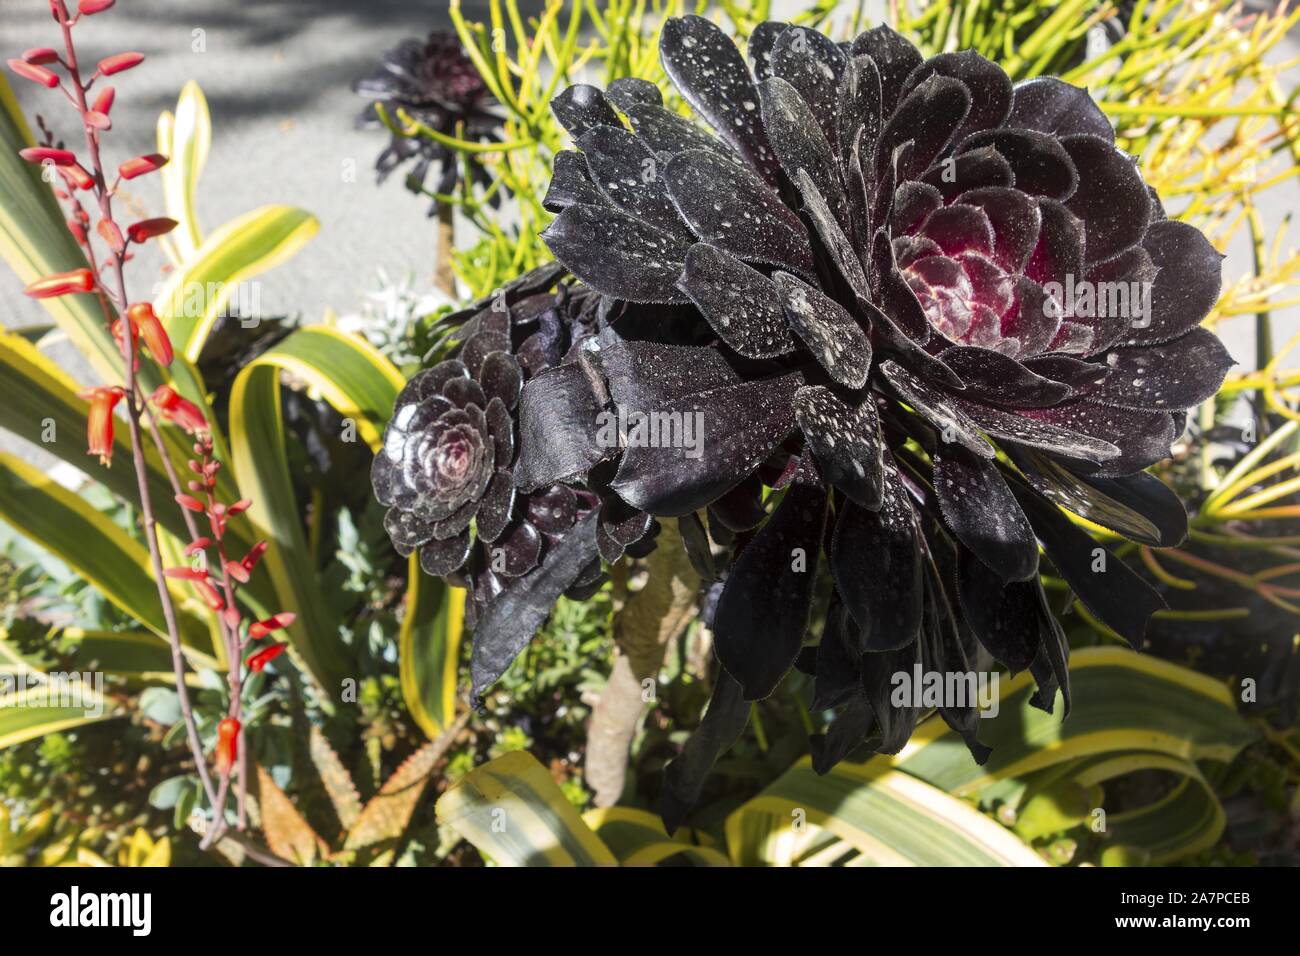 Black Rose Aeonium Arboreum Flower Close Up Macro Blooming in Nature Garden Stock Photo